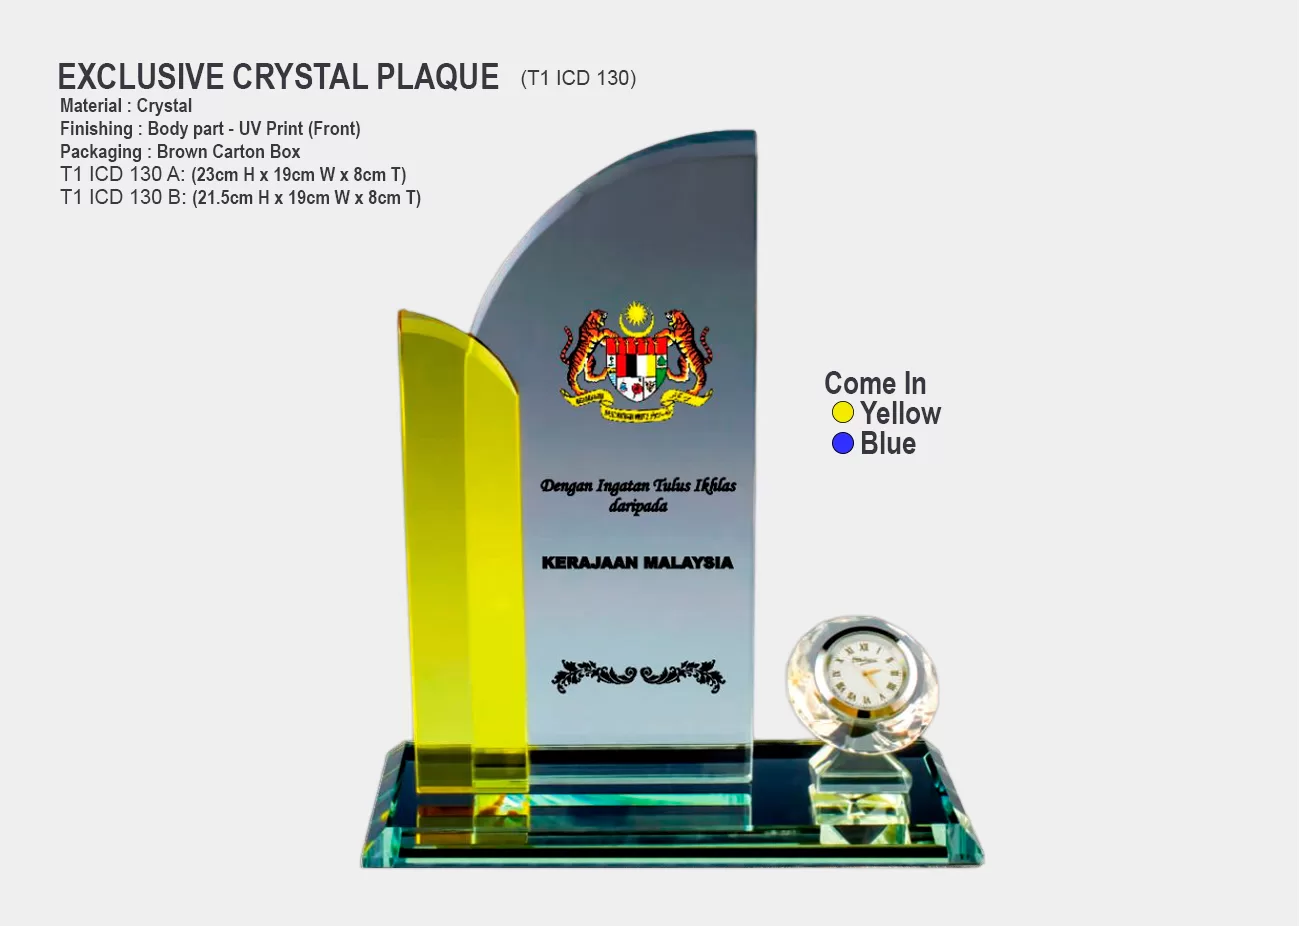 Crystal Plaque